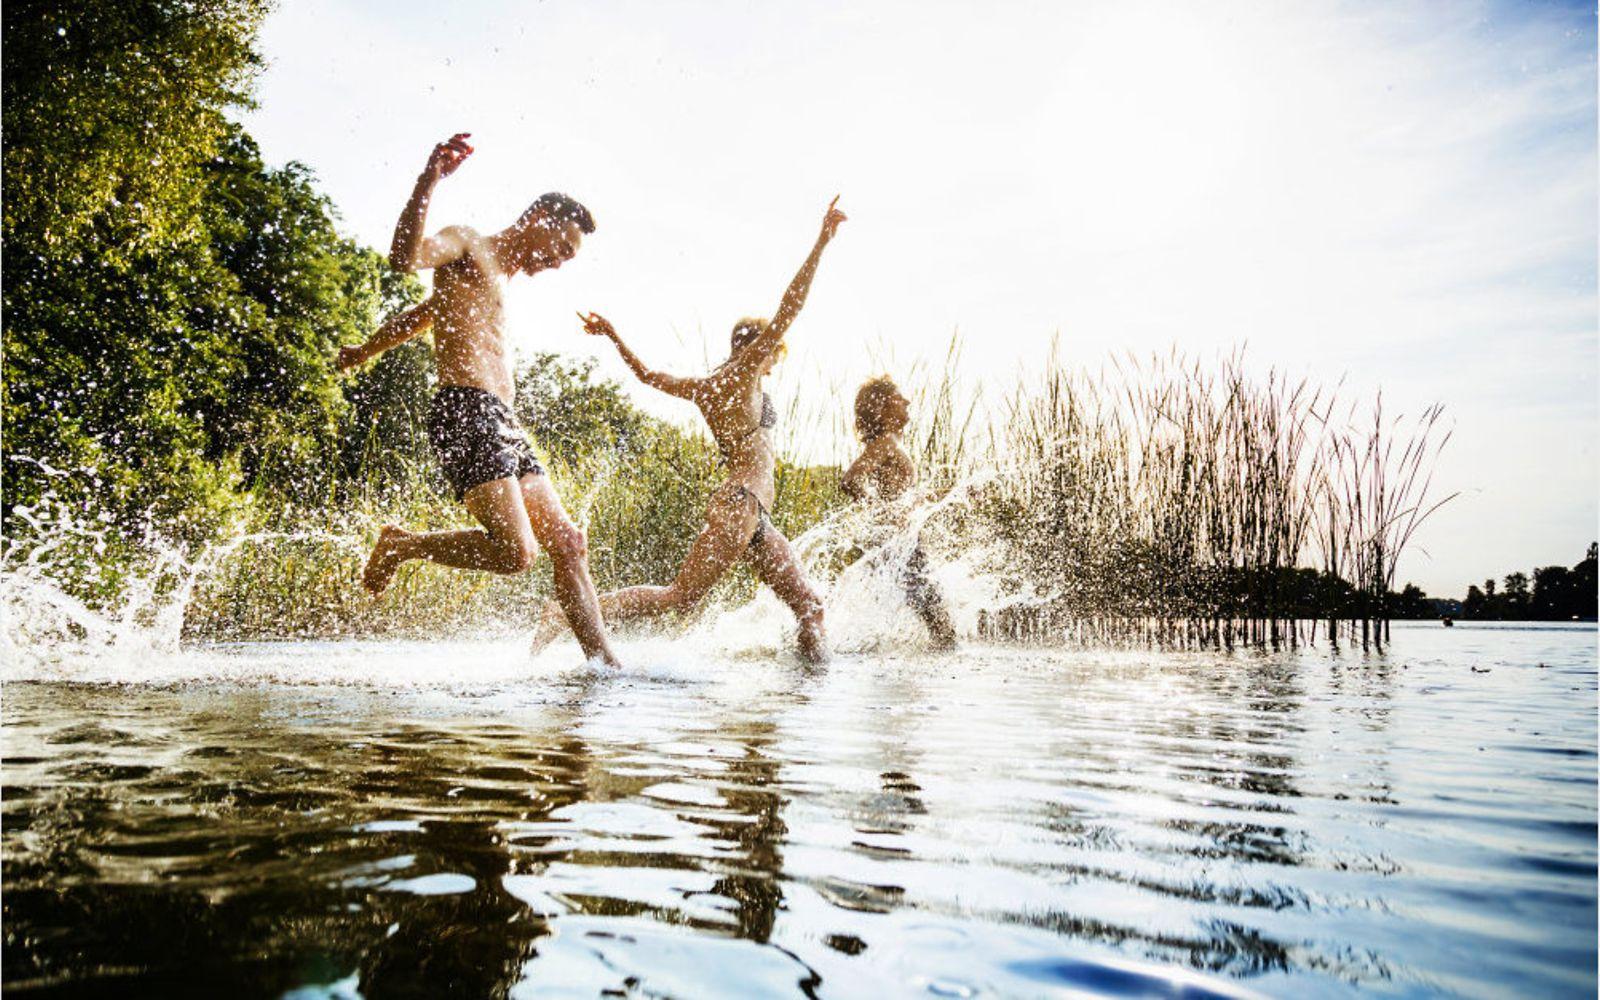 Bewegung und Sport: Drei Personen laufen in einen See.